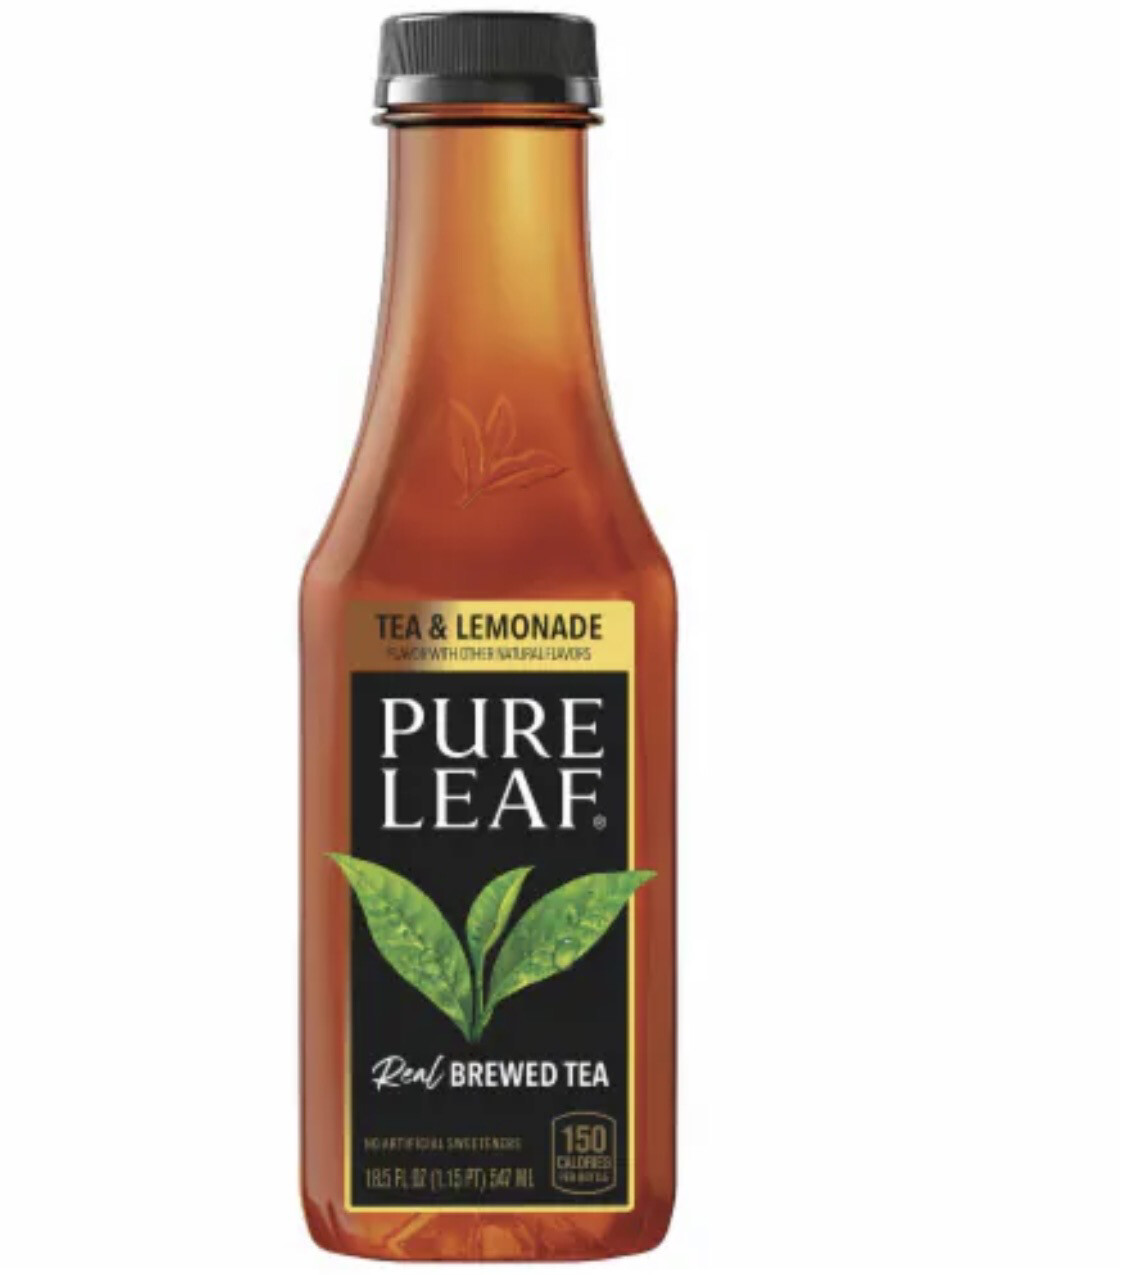 Tea & Lemonade Pure leaf Tea